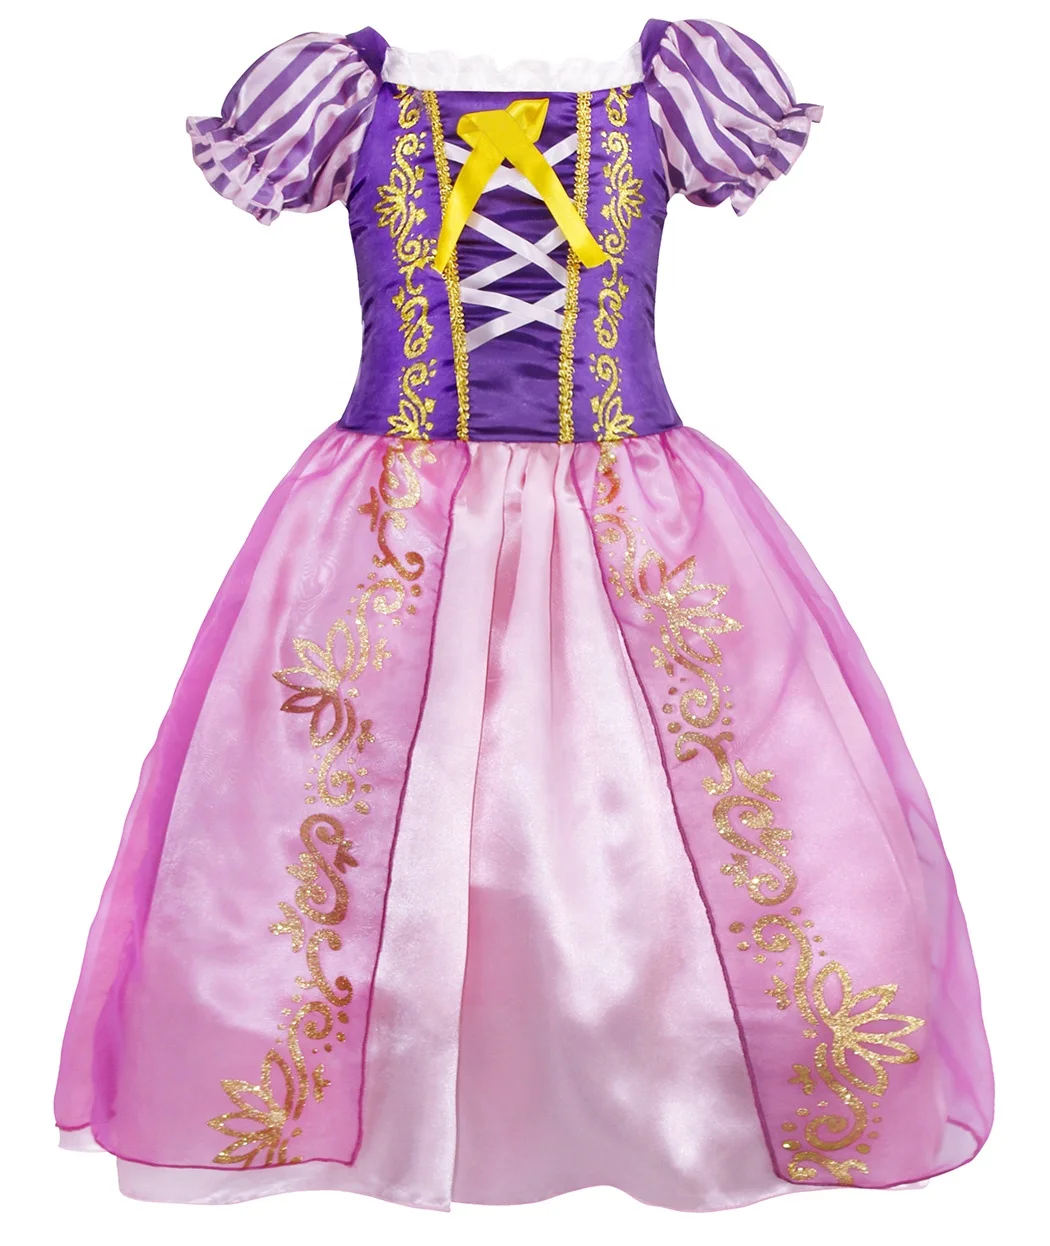 Niña Princesa Rapunzel Vestido con 6 Accesorios WOOLUCK® Disfraz Princesa Niña Vestido de Princesa Tul Maxi Cumpleaños Fiesta Cosplay Navidad Halloween Carnaval Bautizo Vestidos 